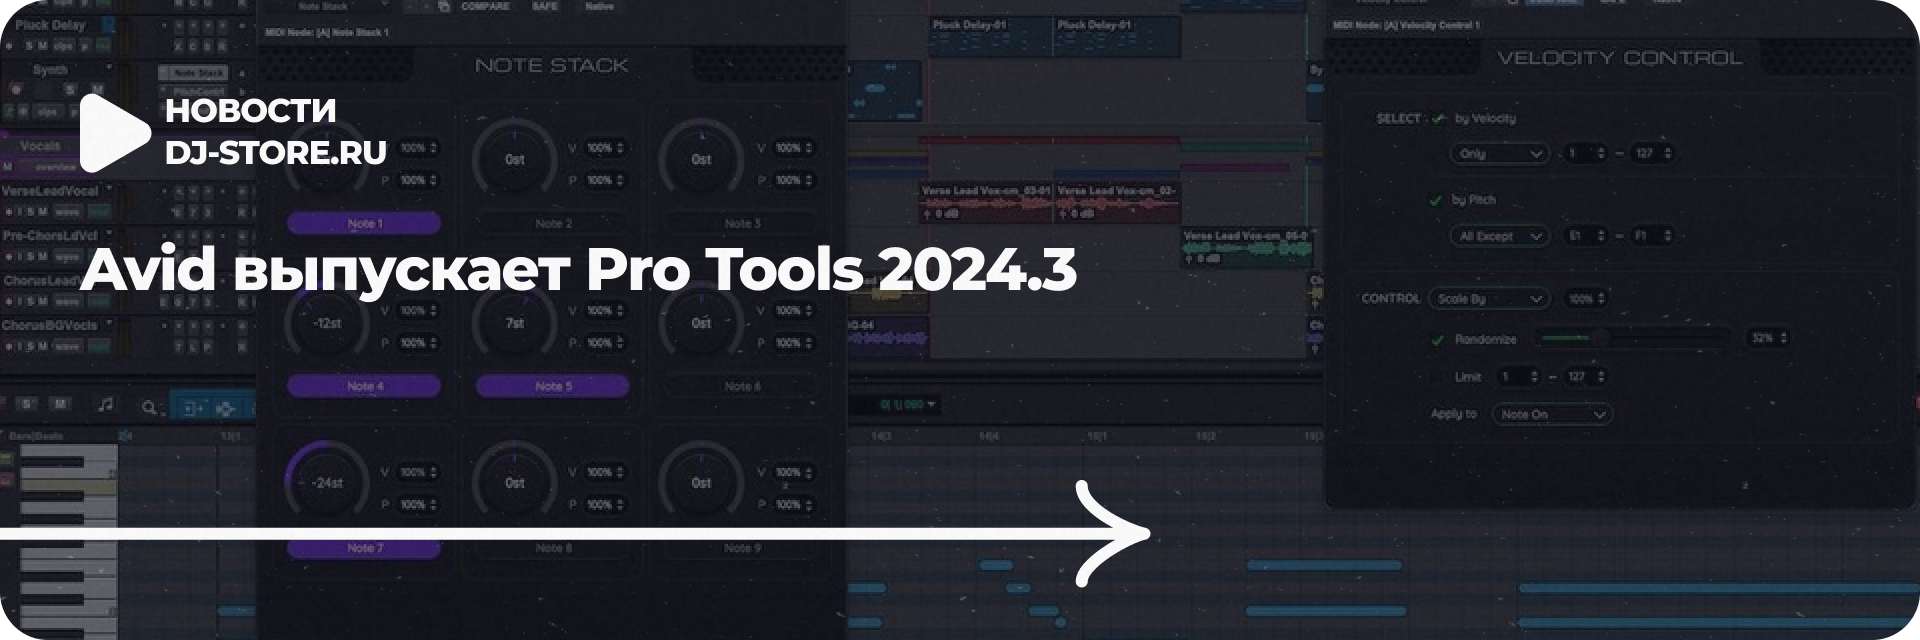 Avid выпускает Pro Tools 2024.3